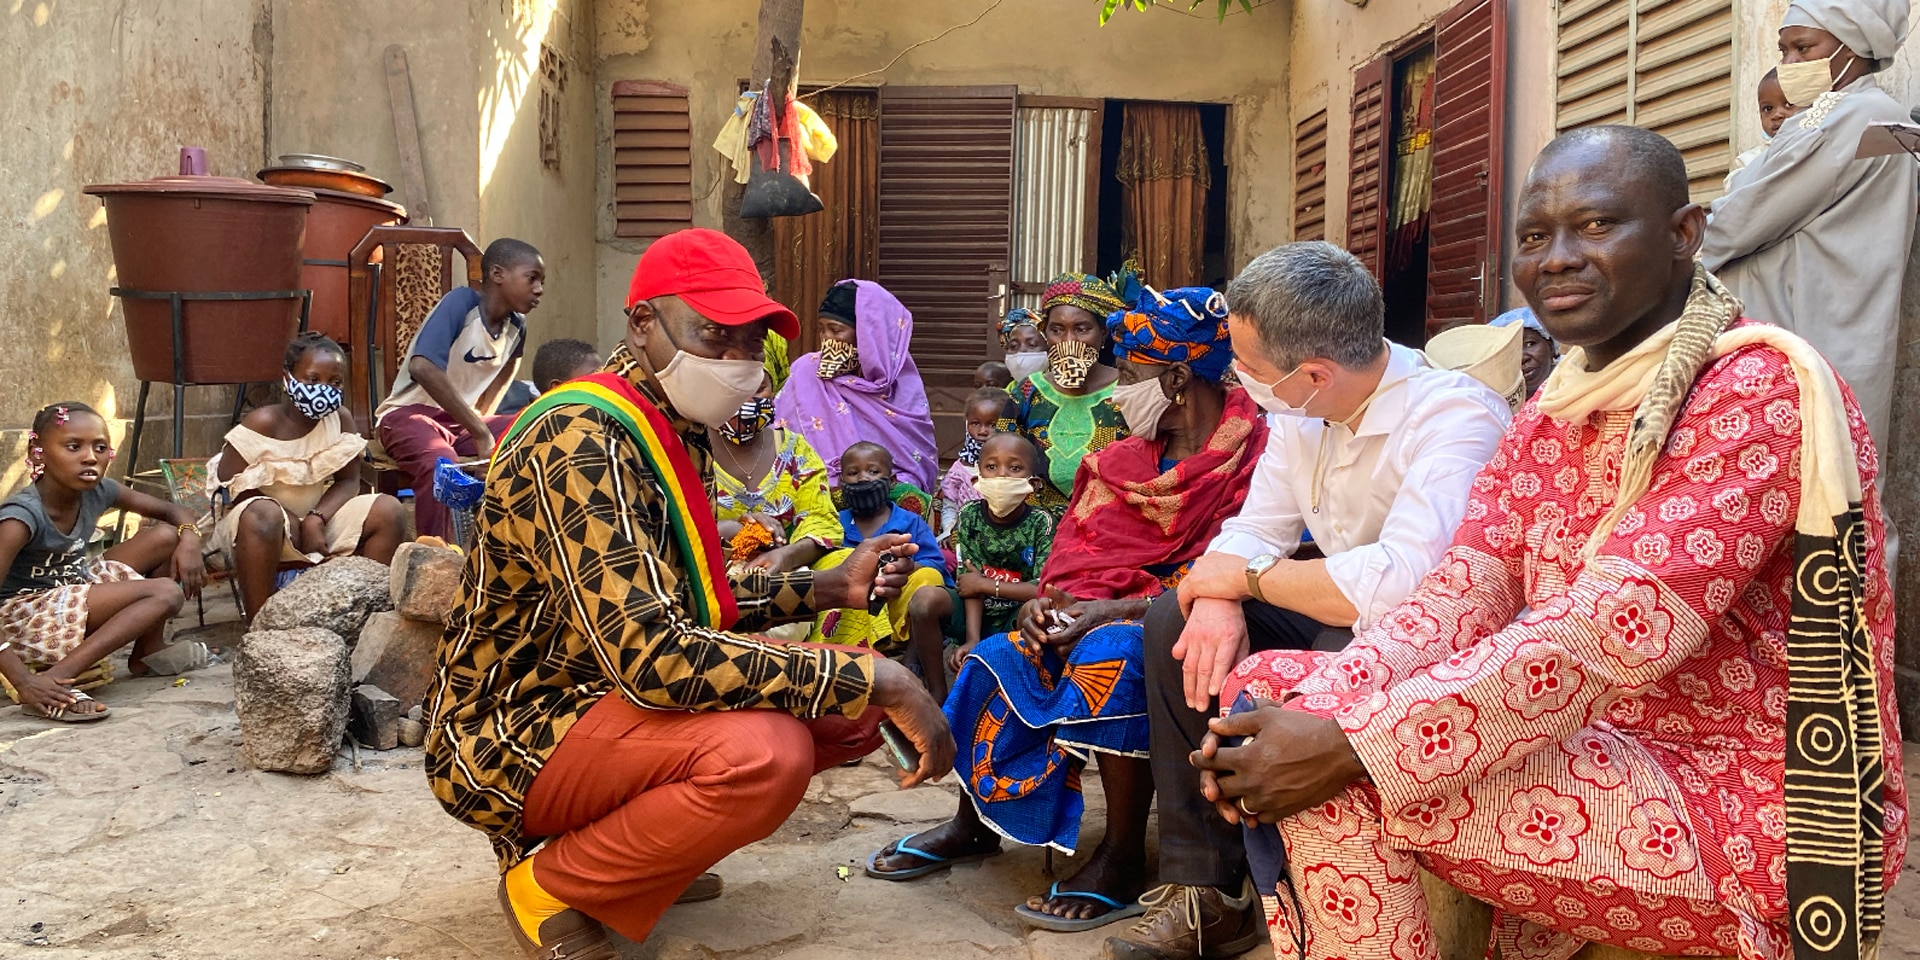 Il ministro degli esteri Cassis è seduto a terra davanti a una casa e sta parlando con alcuni uomini, donne e bambini africani.